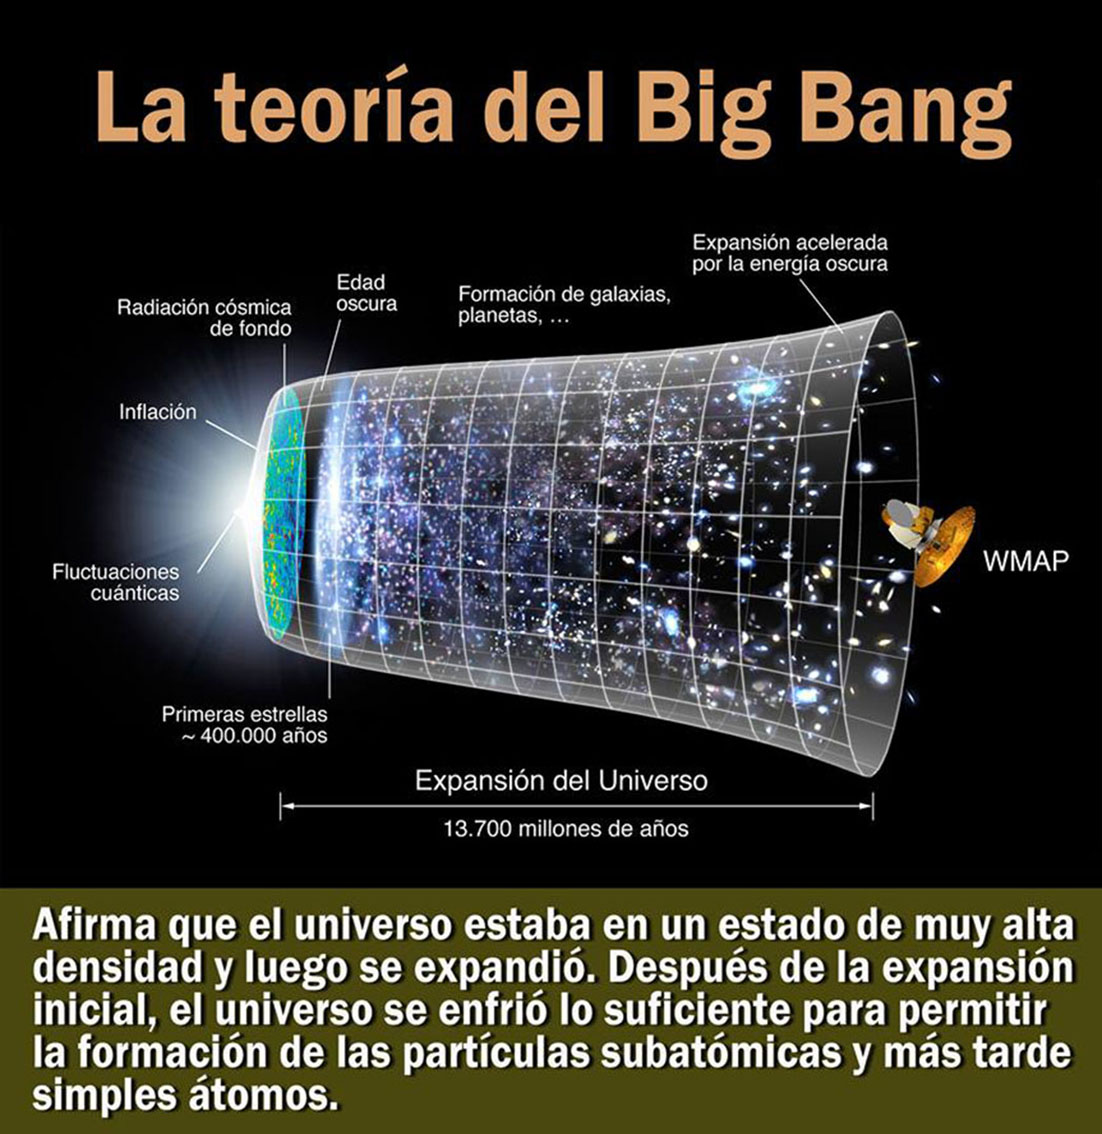 La teoría del Big Bang